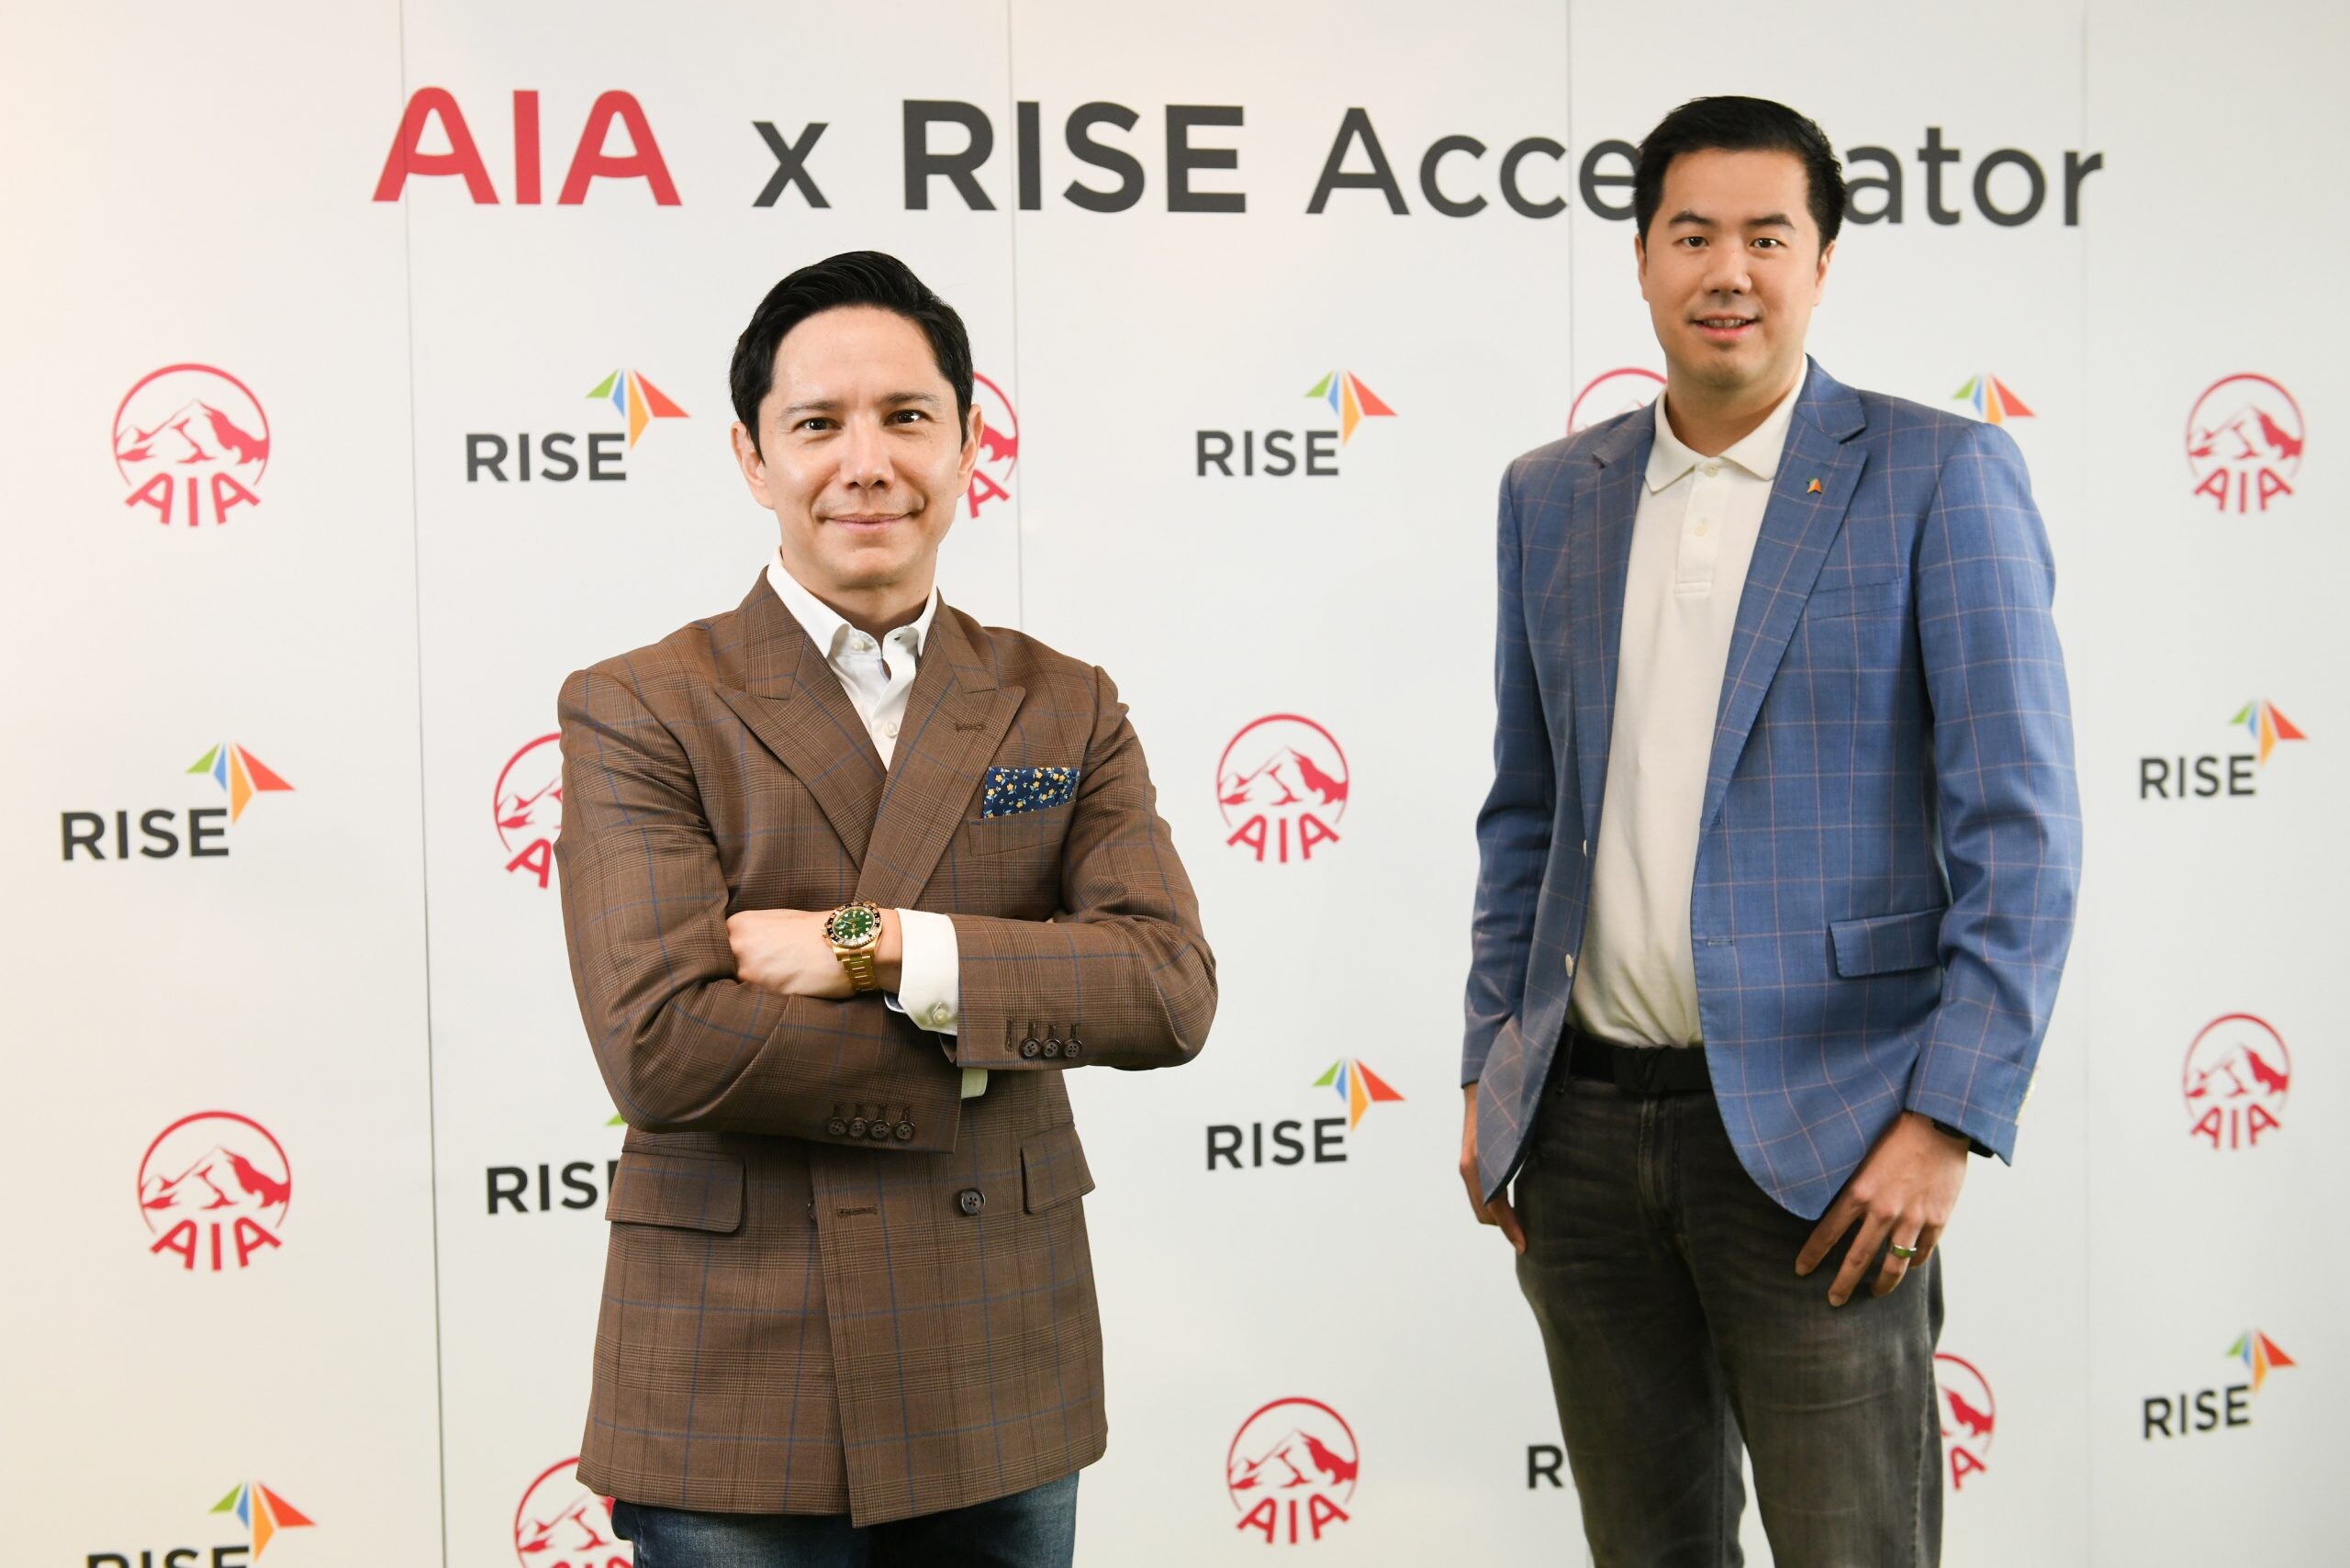 เอไอเอ ประเทศไทย ผนึกกำลัง RISE เปิดตัว "AIA x RISE Accelerator"  จับมือสตาร์ทอัพระดับโลก ปั้นนวัตกรรมเสริมแกร่งความเป็นหนึ่งรอบด้าน